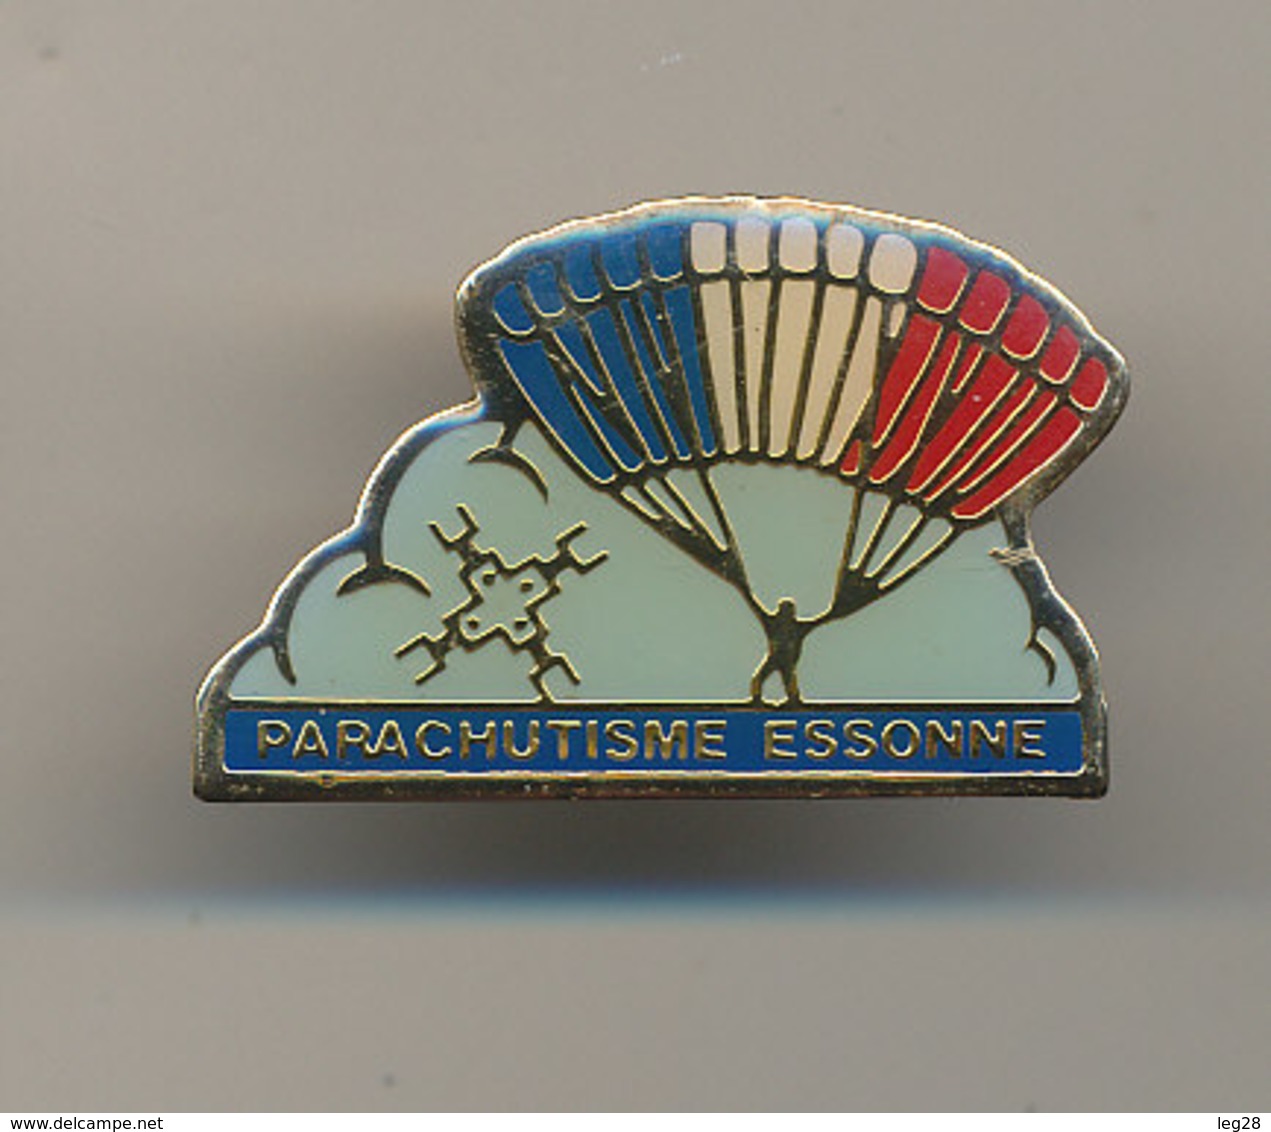 PARACHUTISME ESSONNE - Parachutting